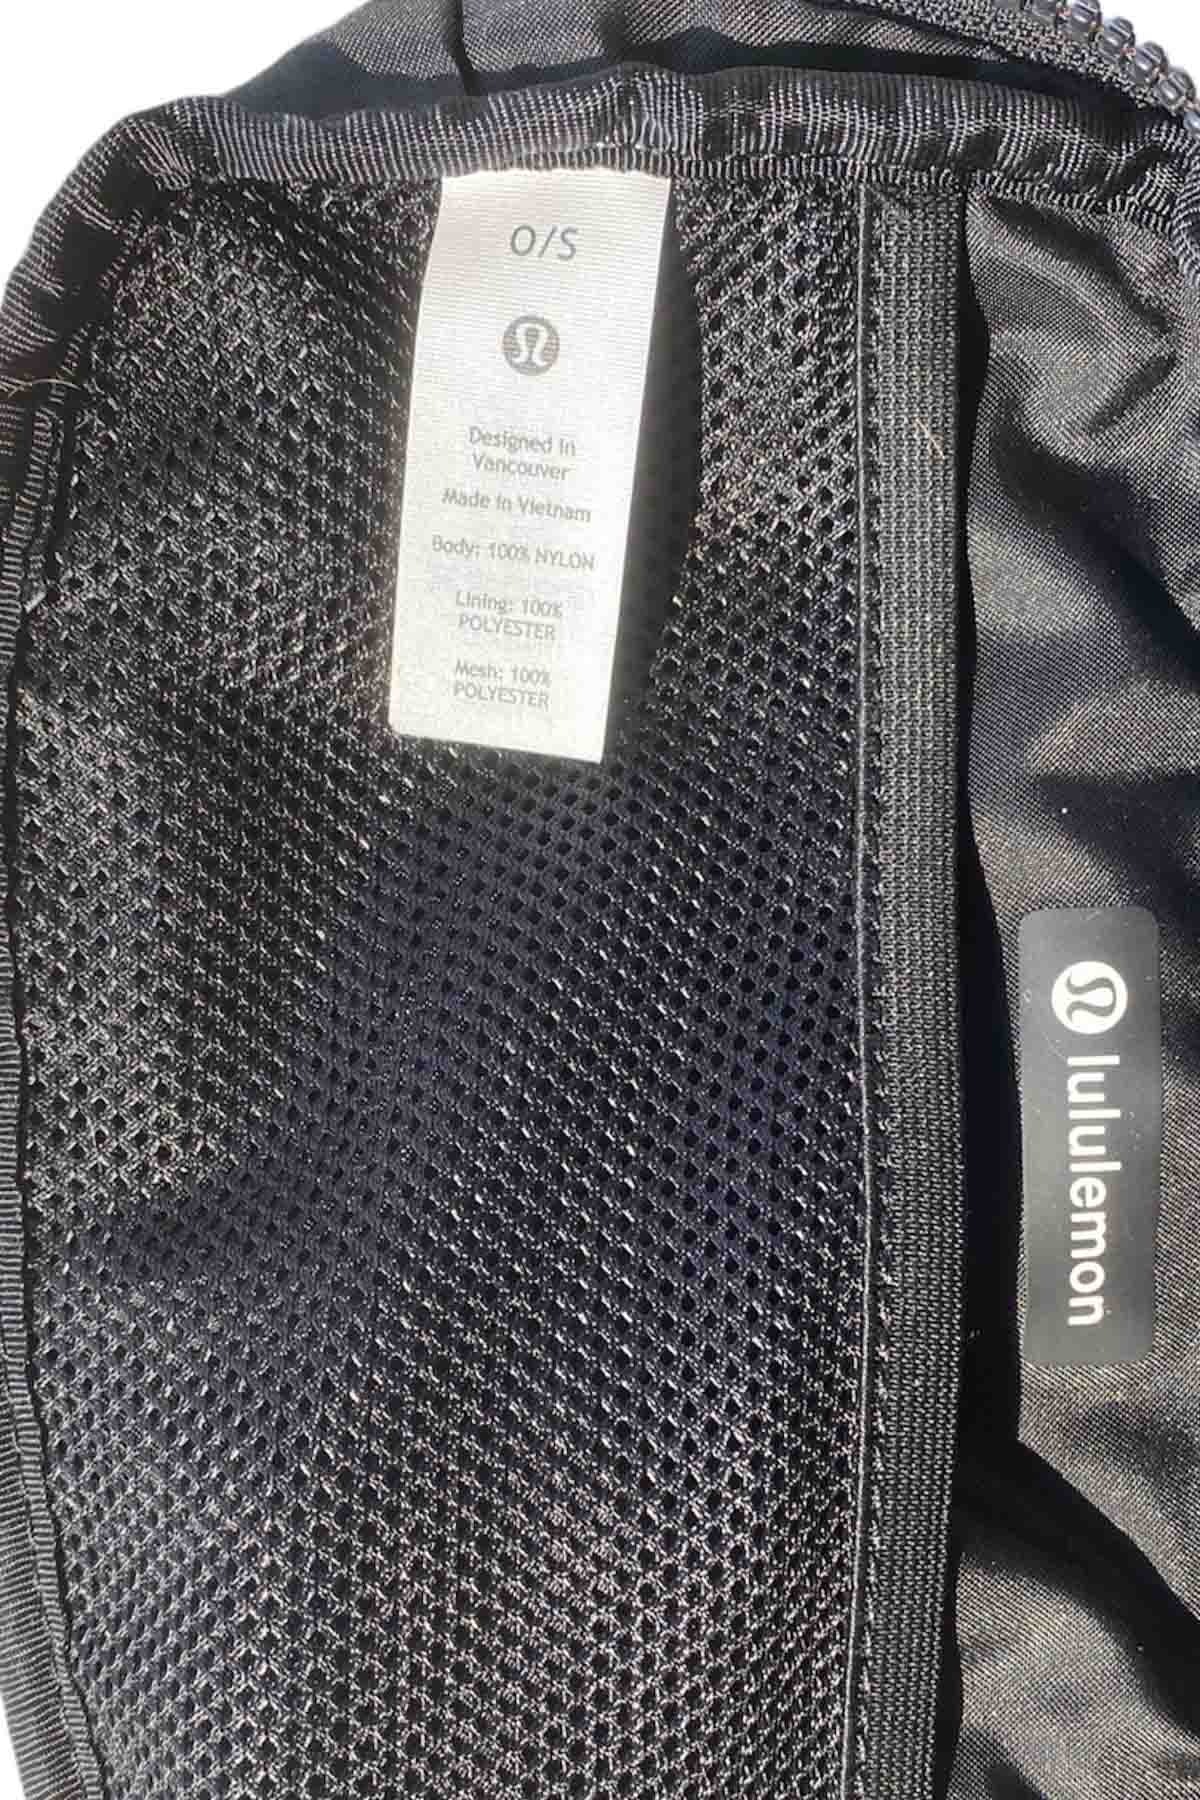 picture of the inside tag of a black lululemon belt bag.